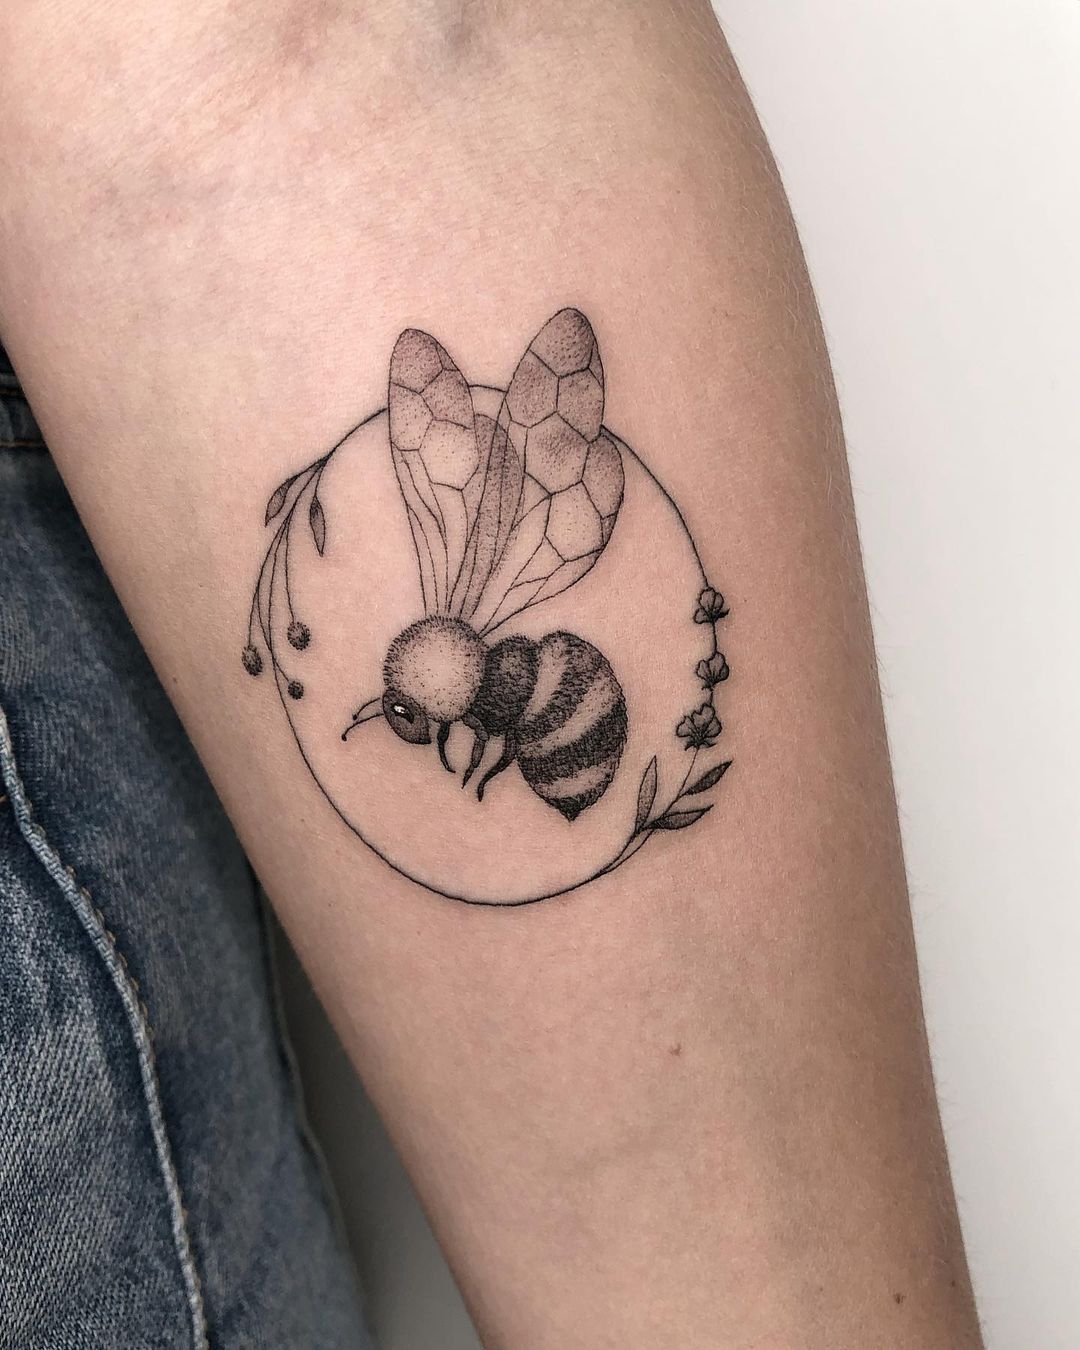 Black bee tattoo